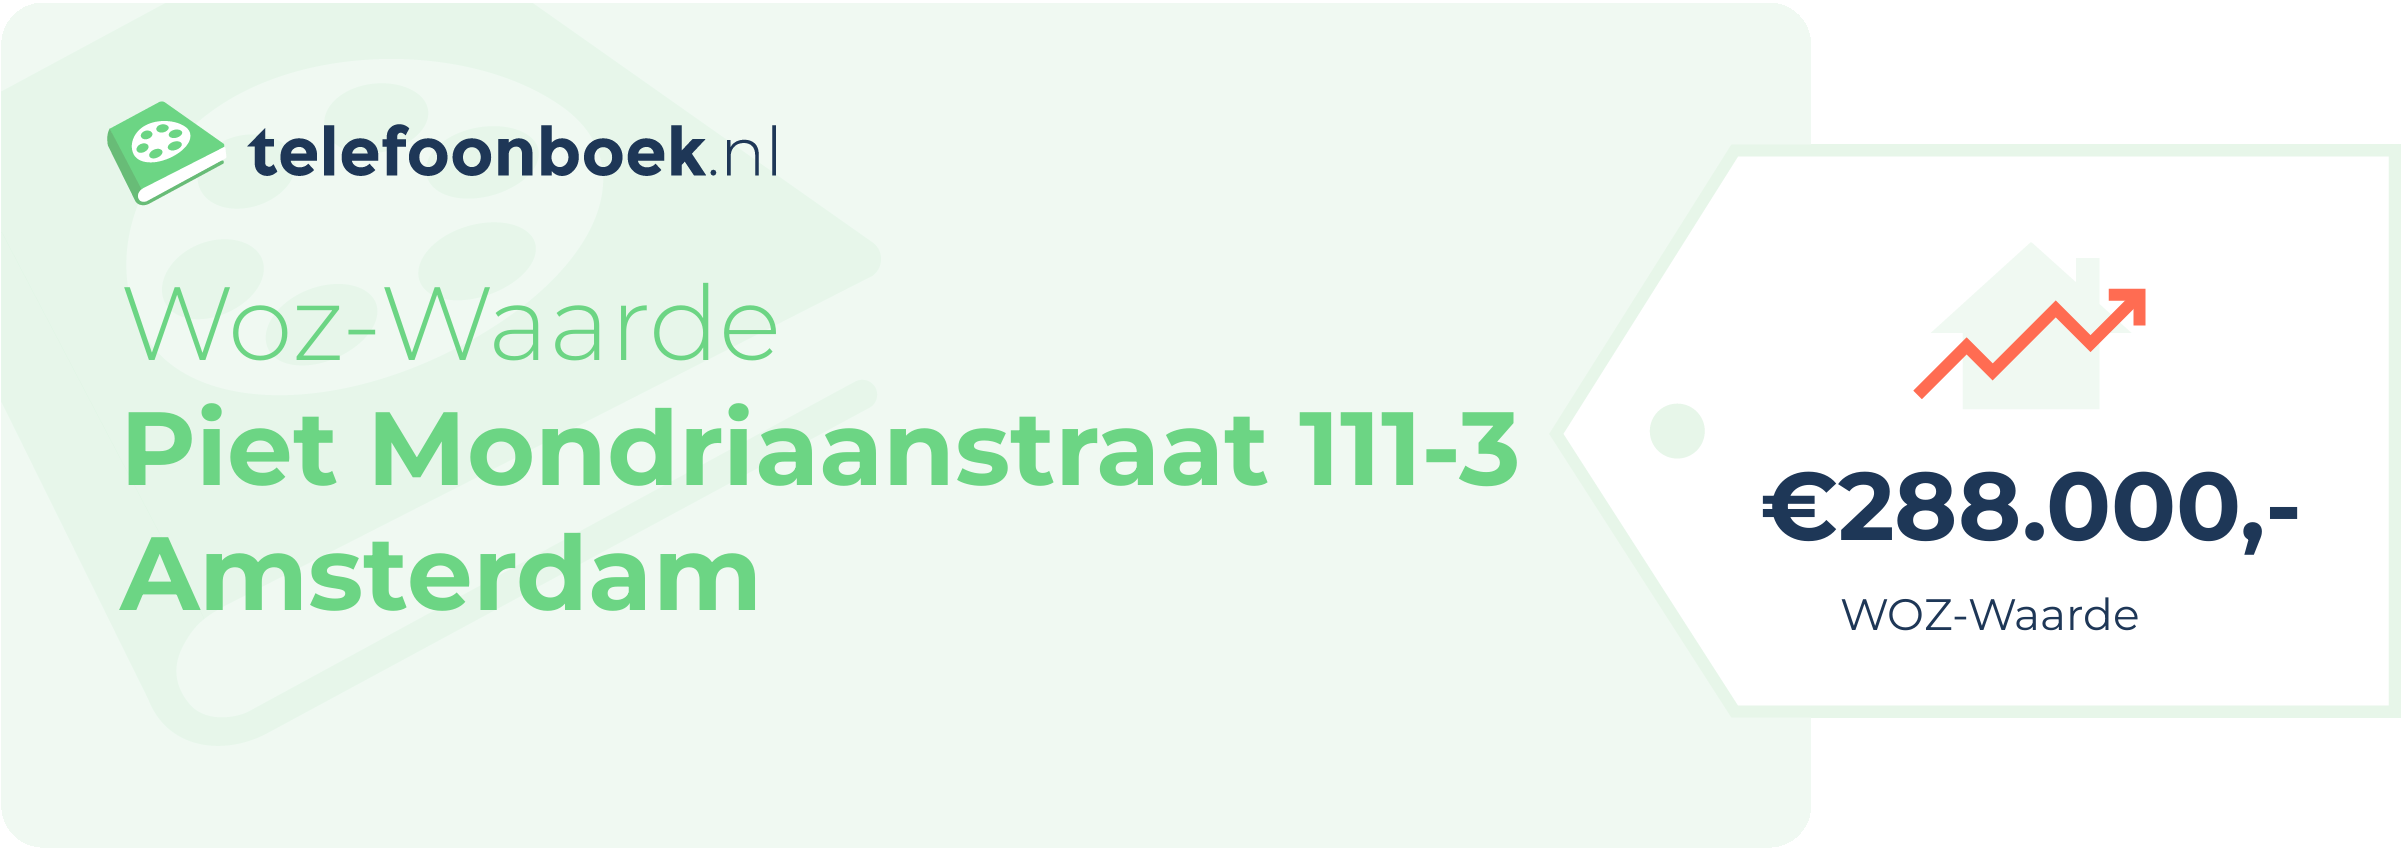 WOZ-waarde Piet Mondriaanstraat 111-3 Amsterdam